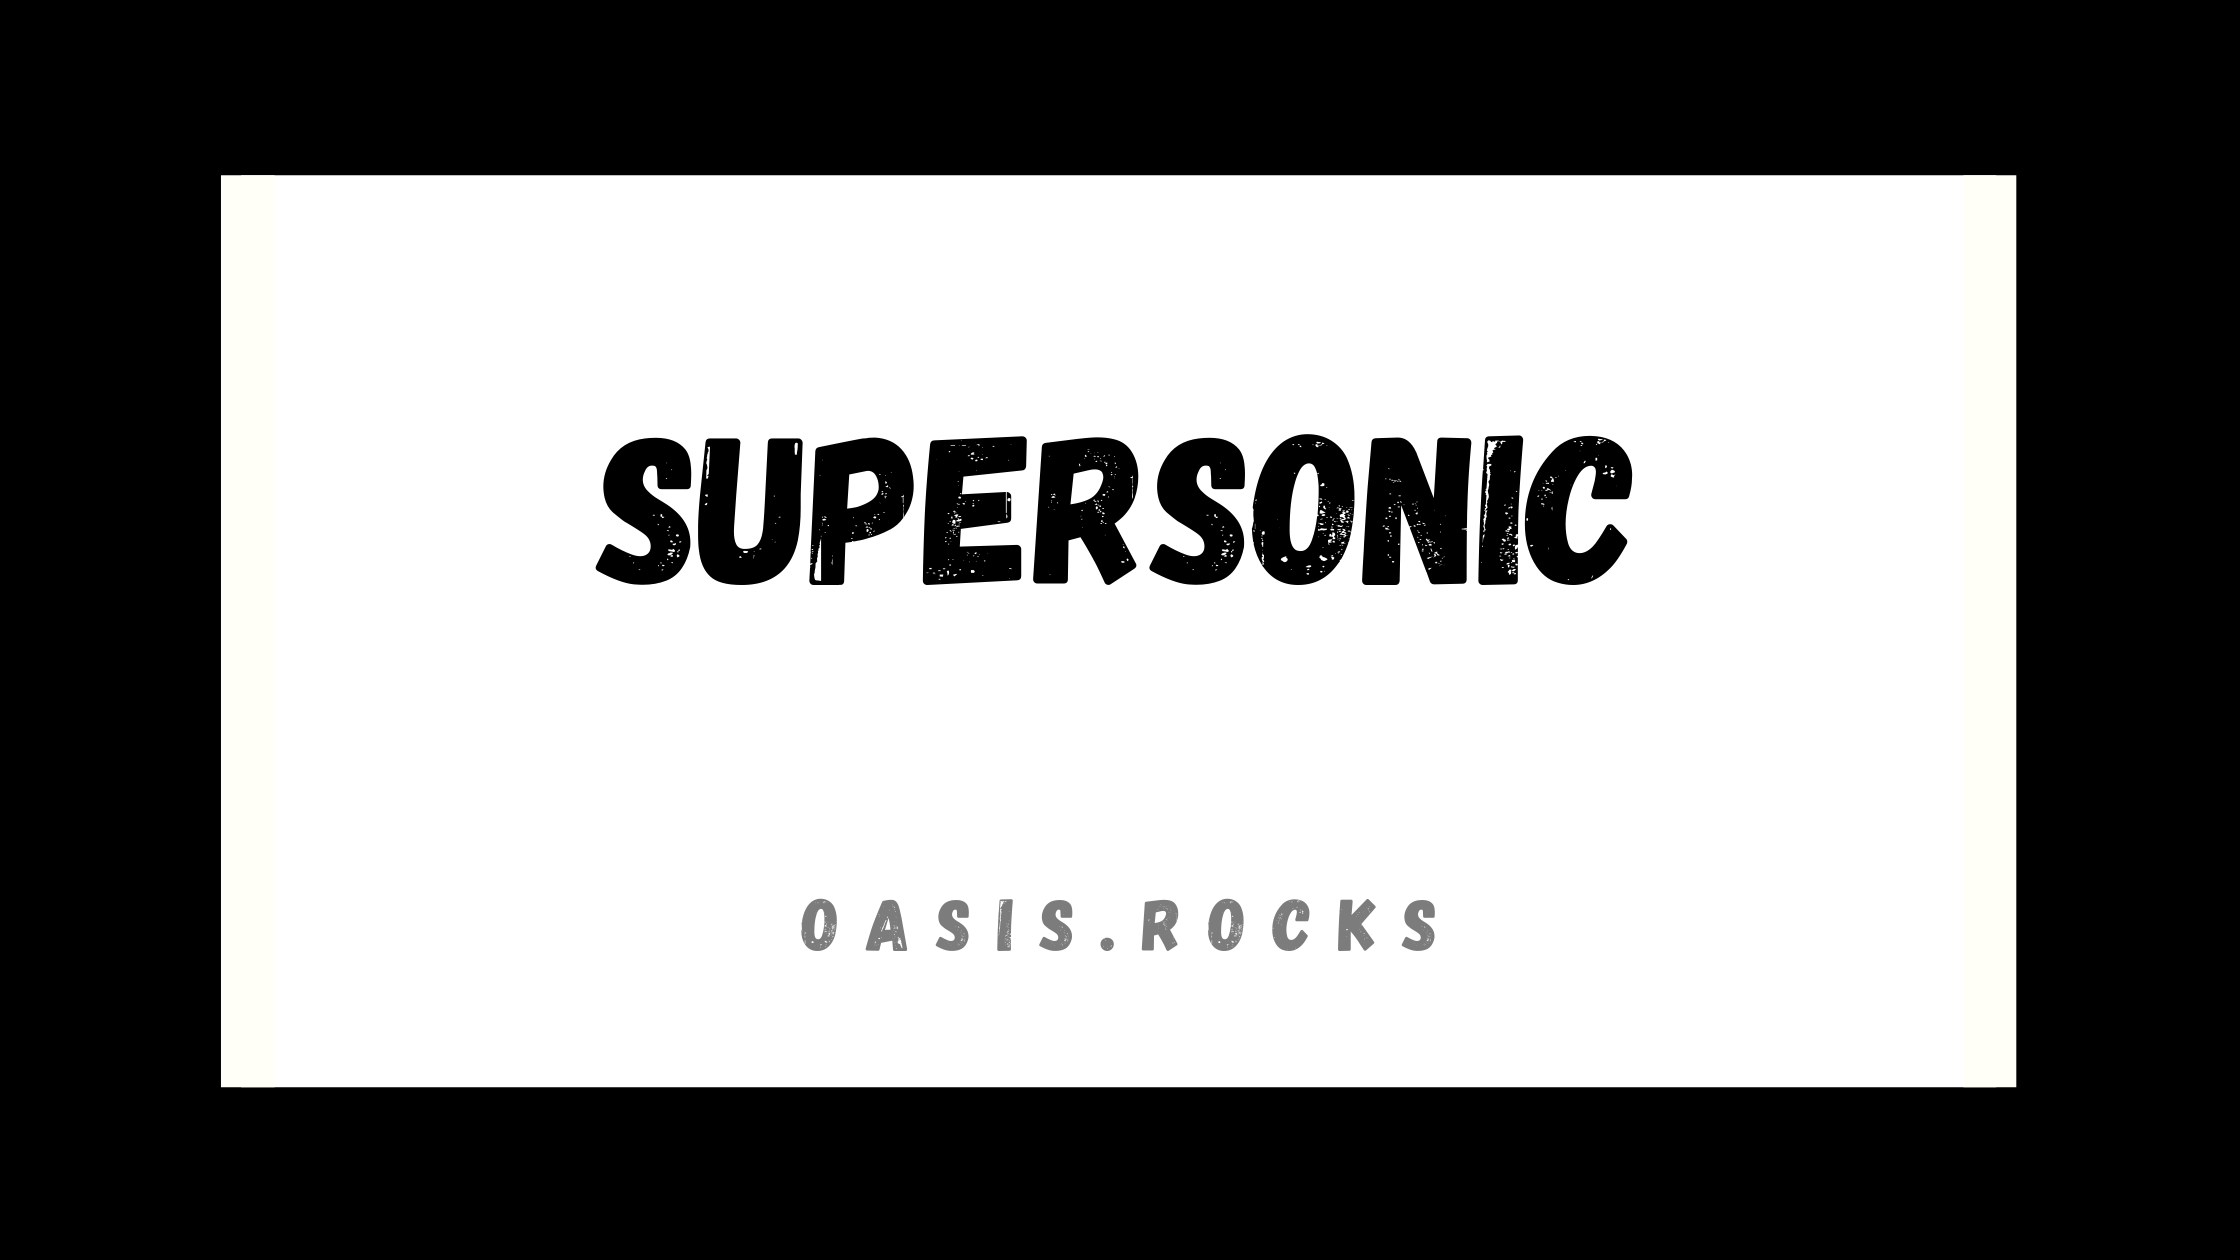 Supersonic ist ein Song von Oasis.